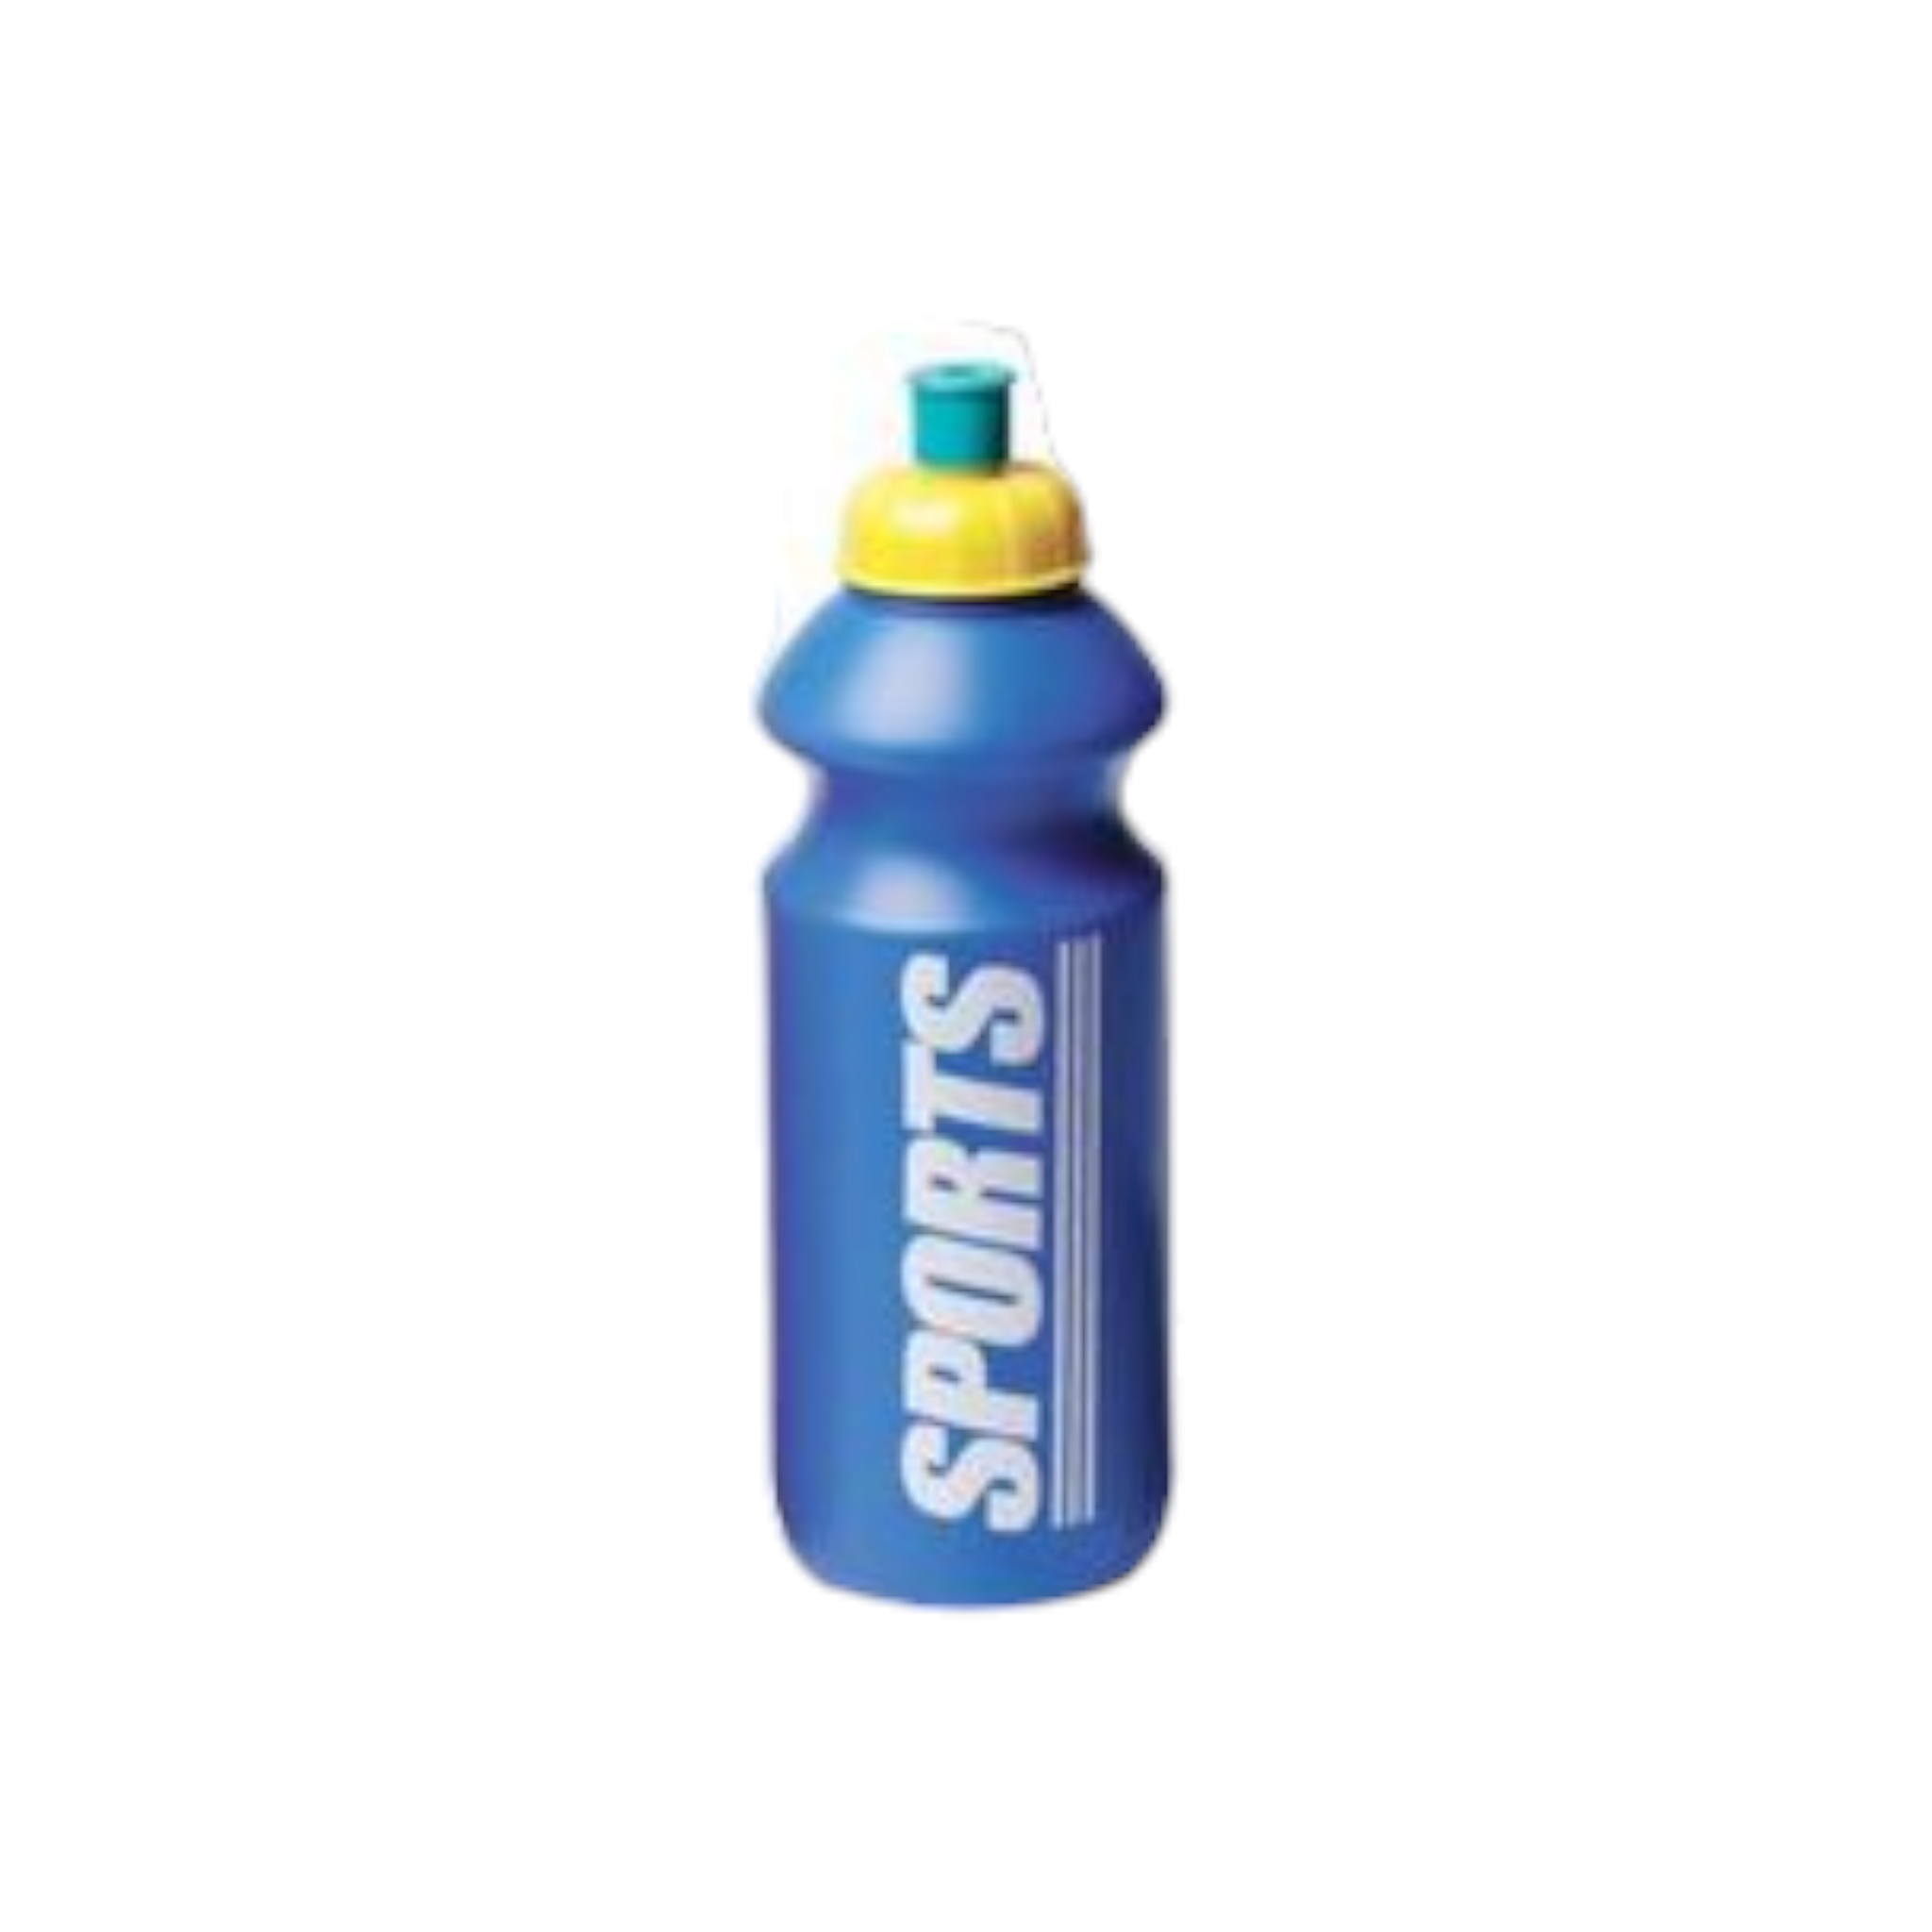 Sports Water Bottle 500ml